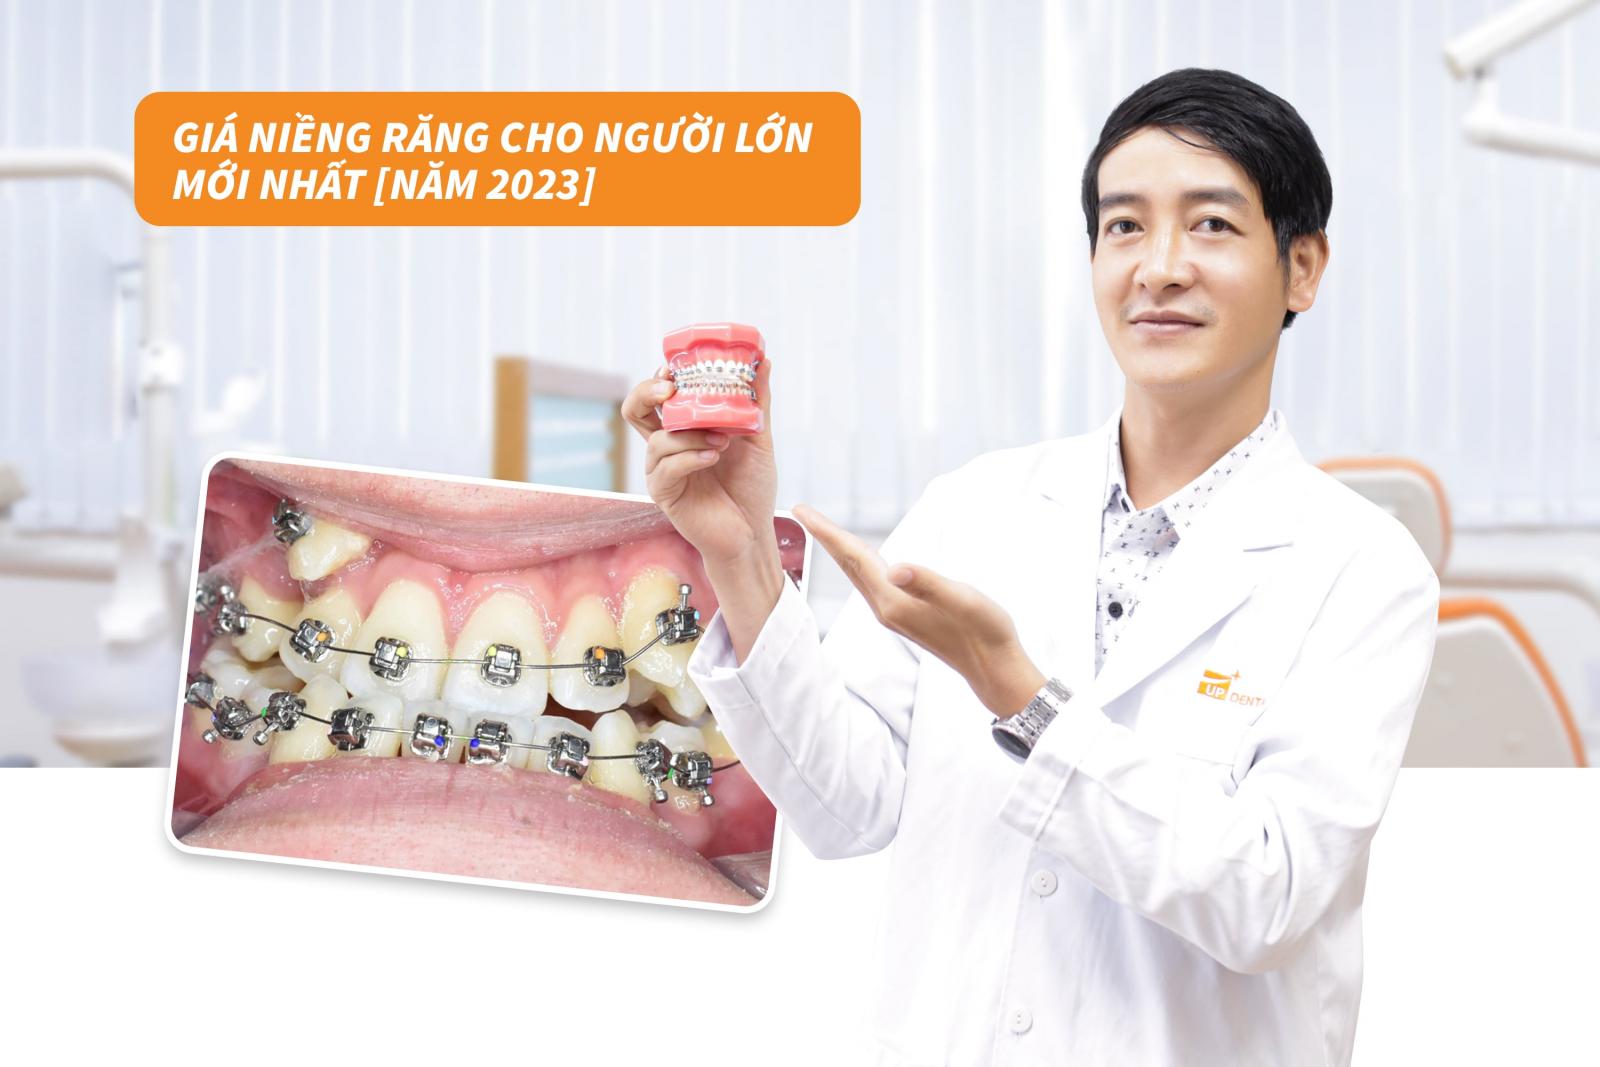 Giá niềng răng cho người lớn mới nhất năm 2023